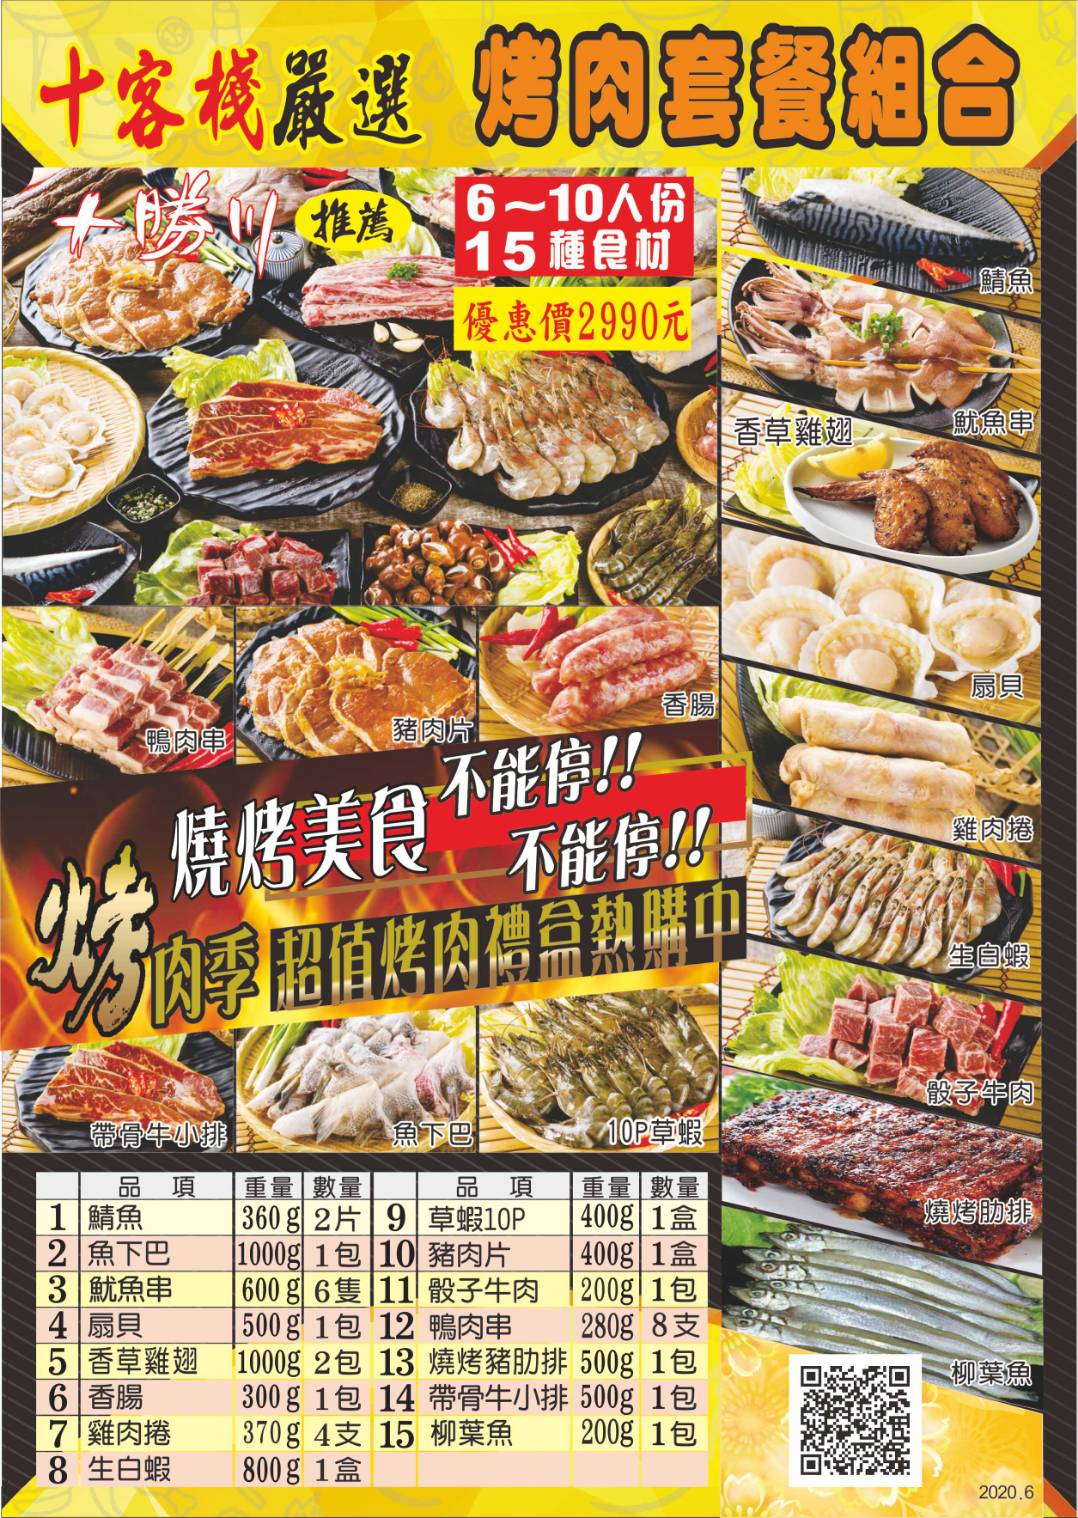 豪華烤肉套餐禮盒(15種食材6-10人份)